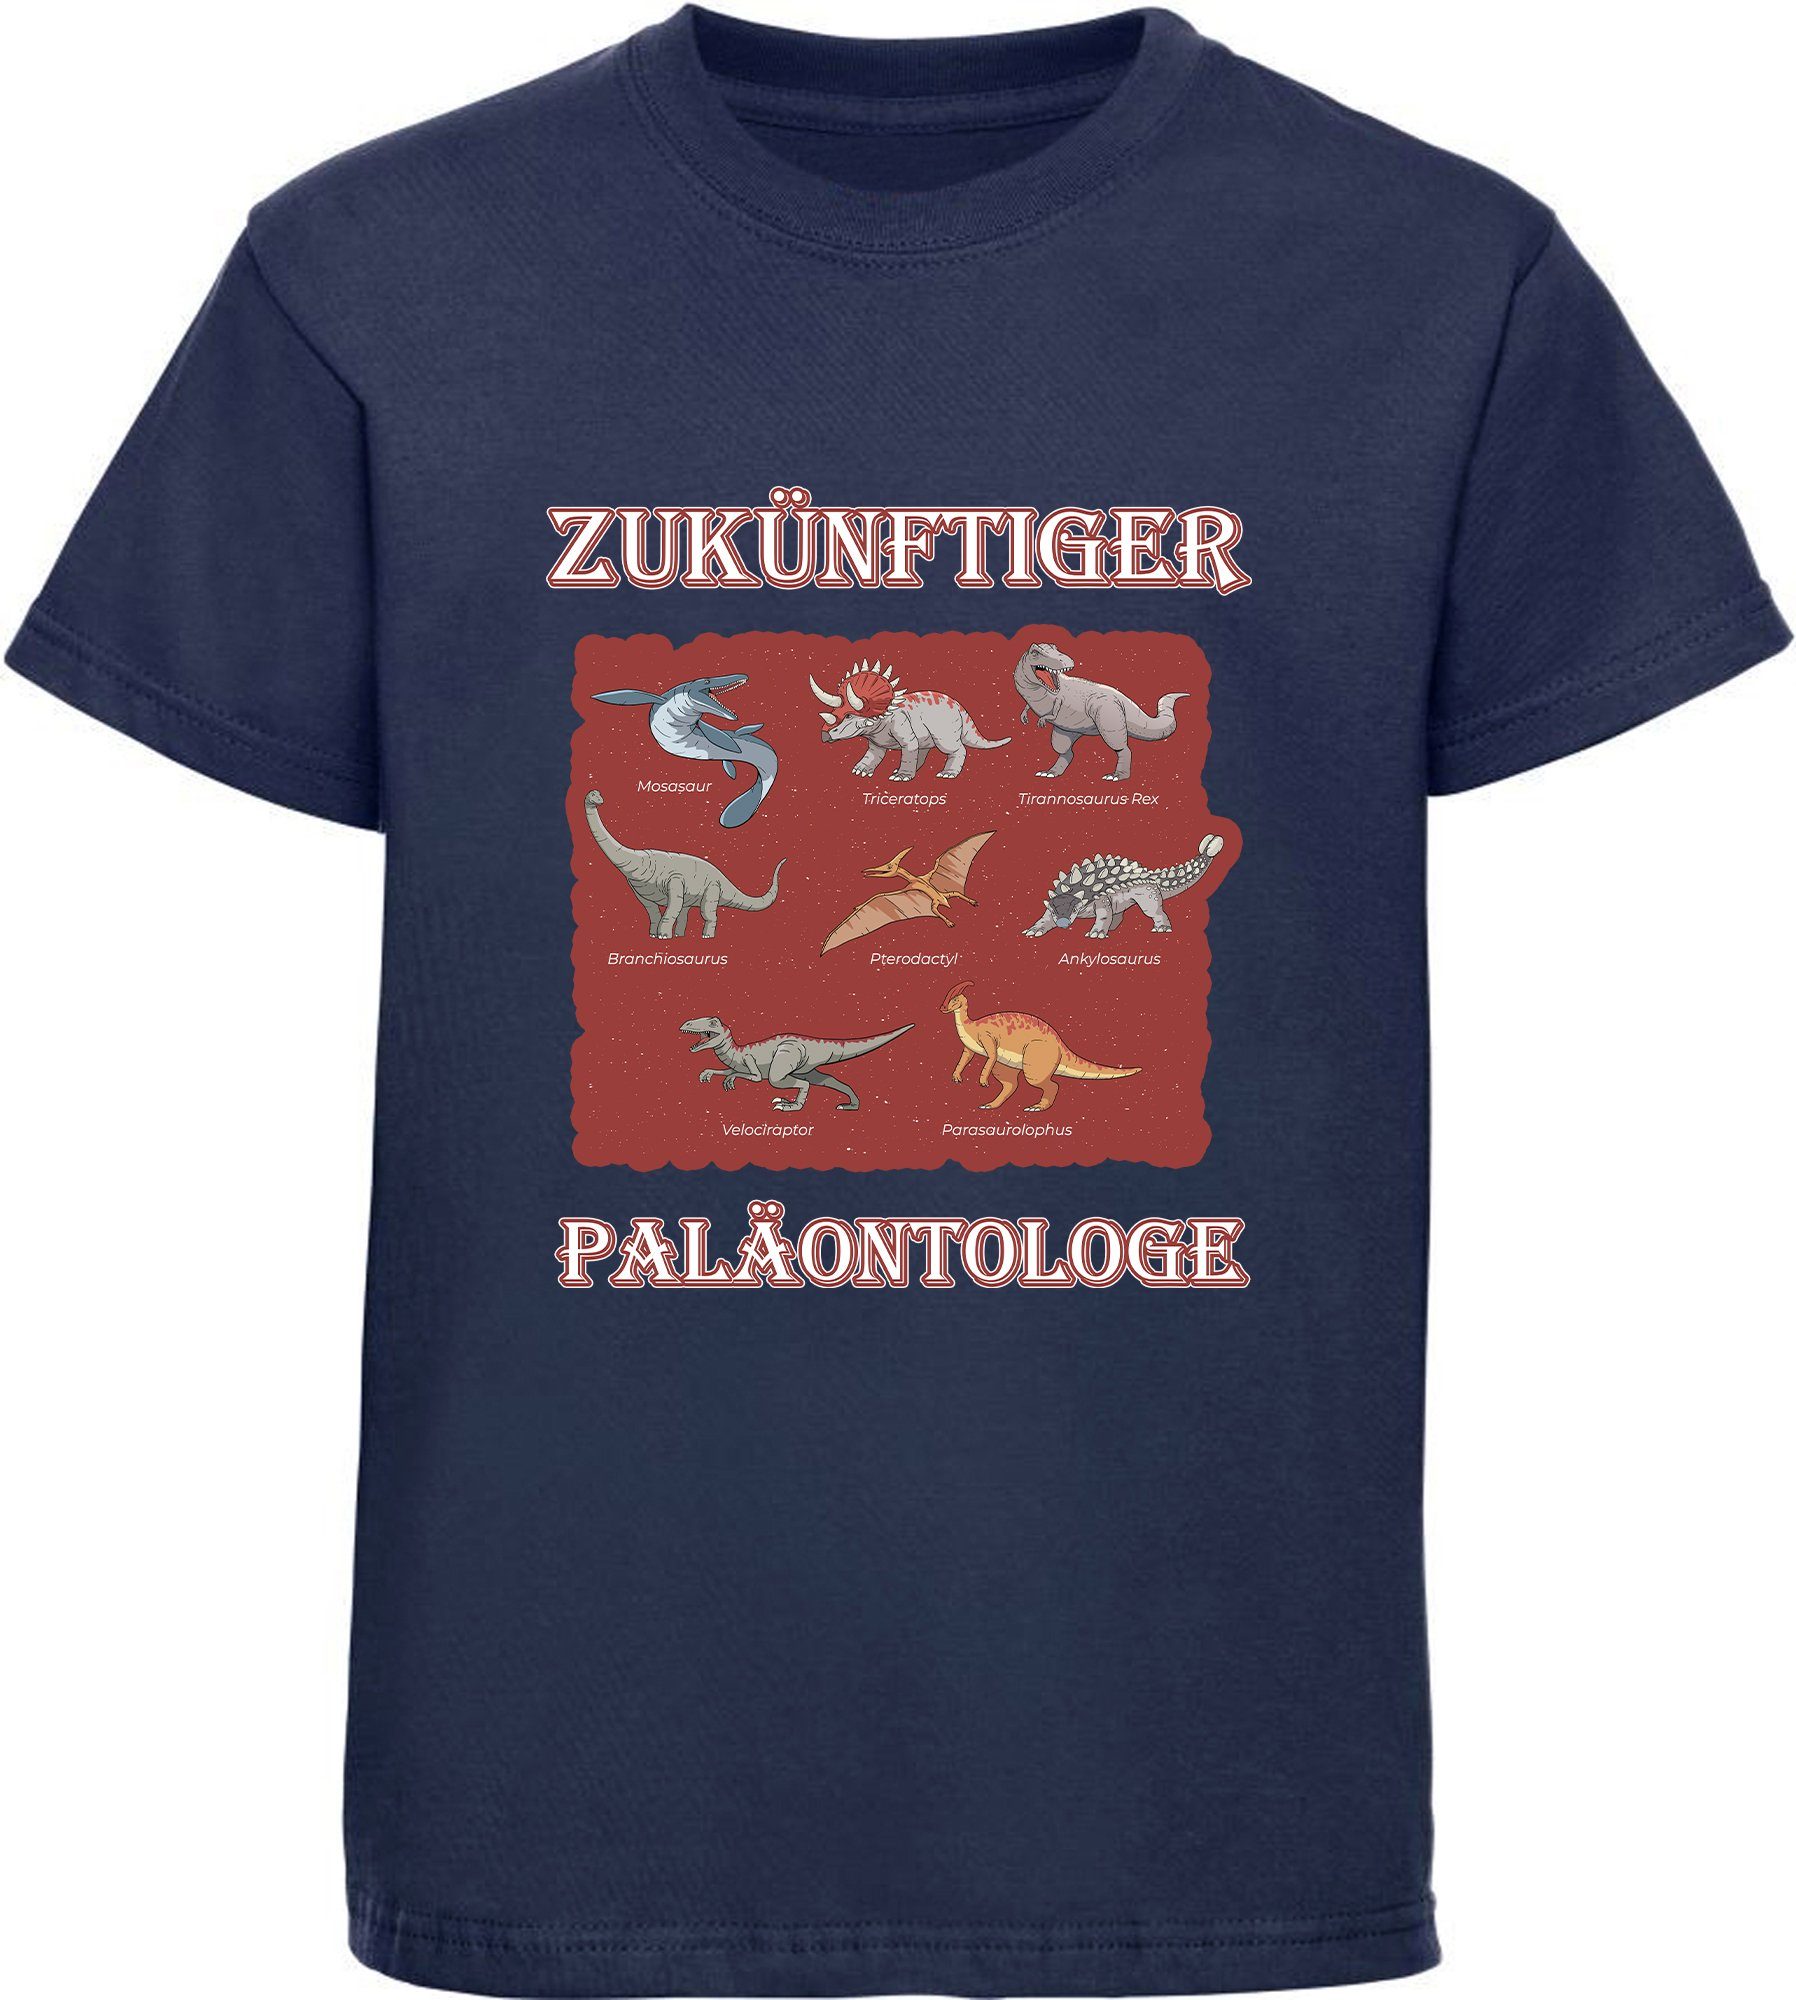 MyDesign24 T-Shirt bedrucktes Kinder T-Shirt Paläontologe mit vielen Dinosauriern 100% Baumwolle mit Dino Aufdruck, navy blau i50